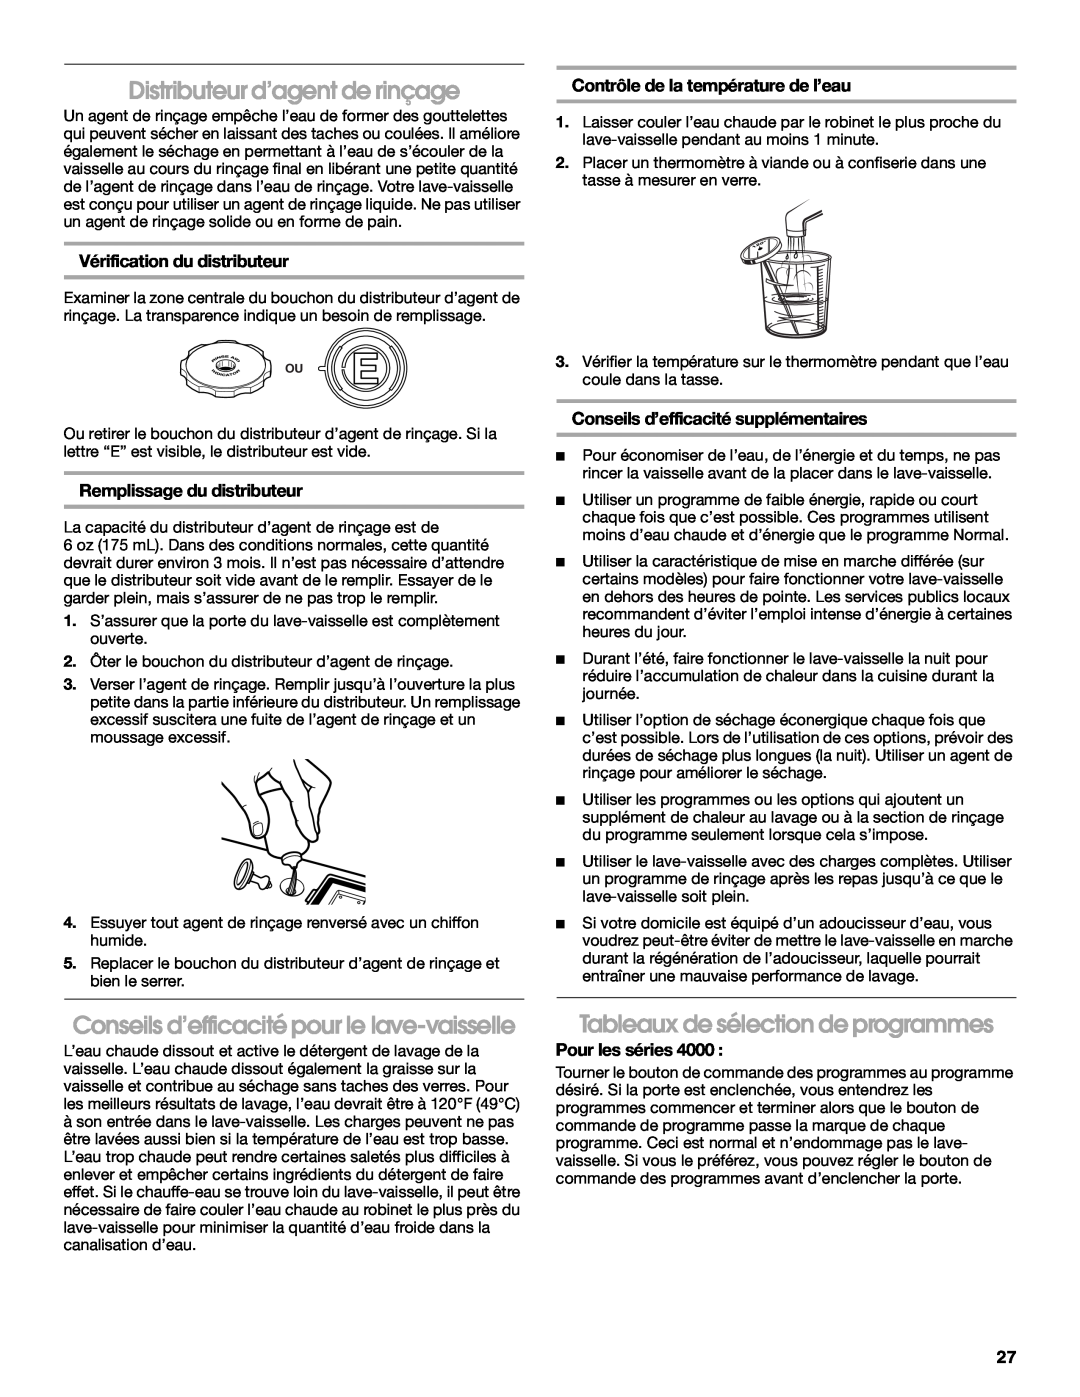 IKEA IUD6000S Distributeur d’agent de rinçage, Conseils d’efficacité pour le lave-vaisselle, Vérification du distributeur 